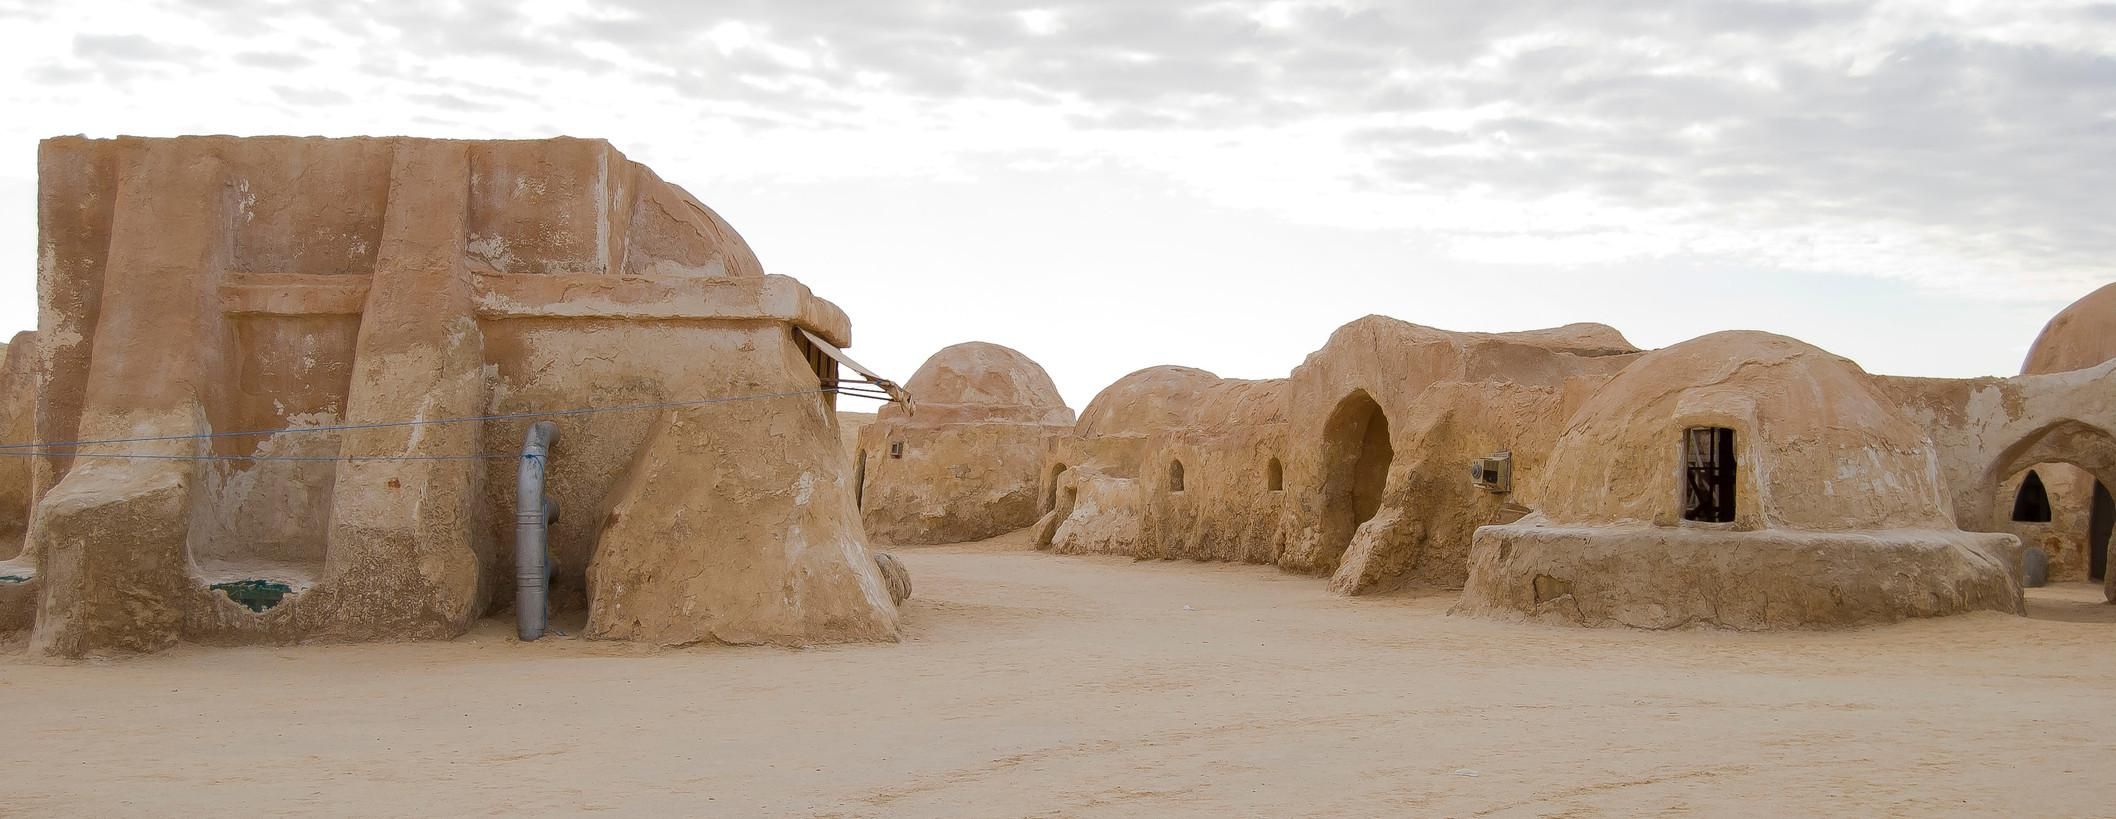 A Star Wars egyik forgatási helyszíne Tunéziában.